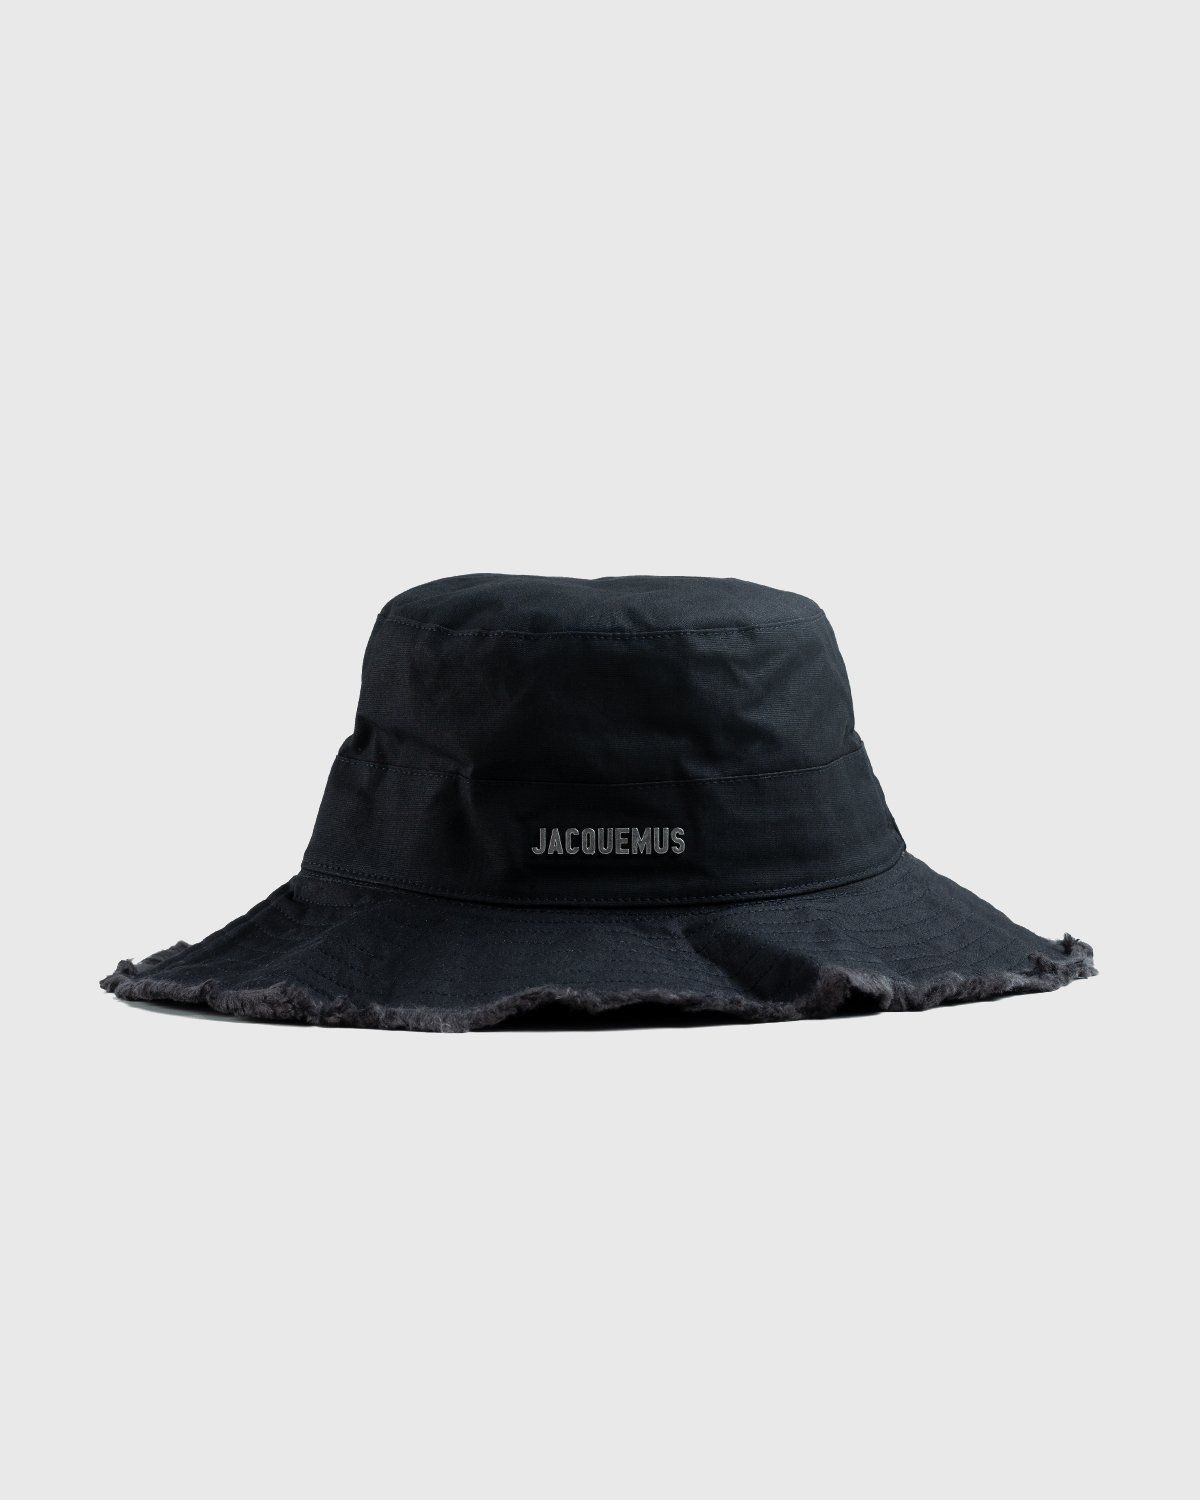 JACQUEMUS – Le Bob Artichaut Black - Hats - Black - Image 1